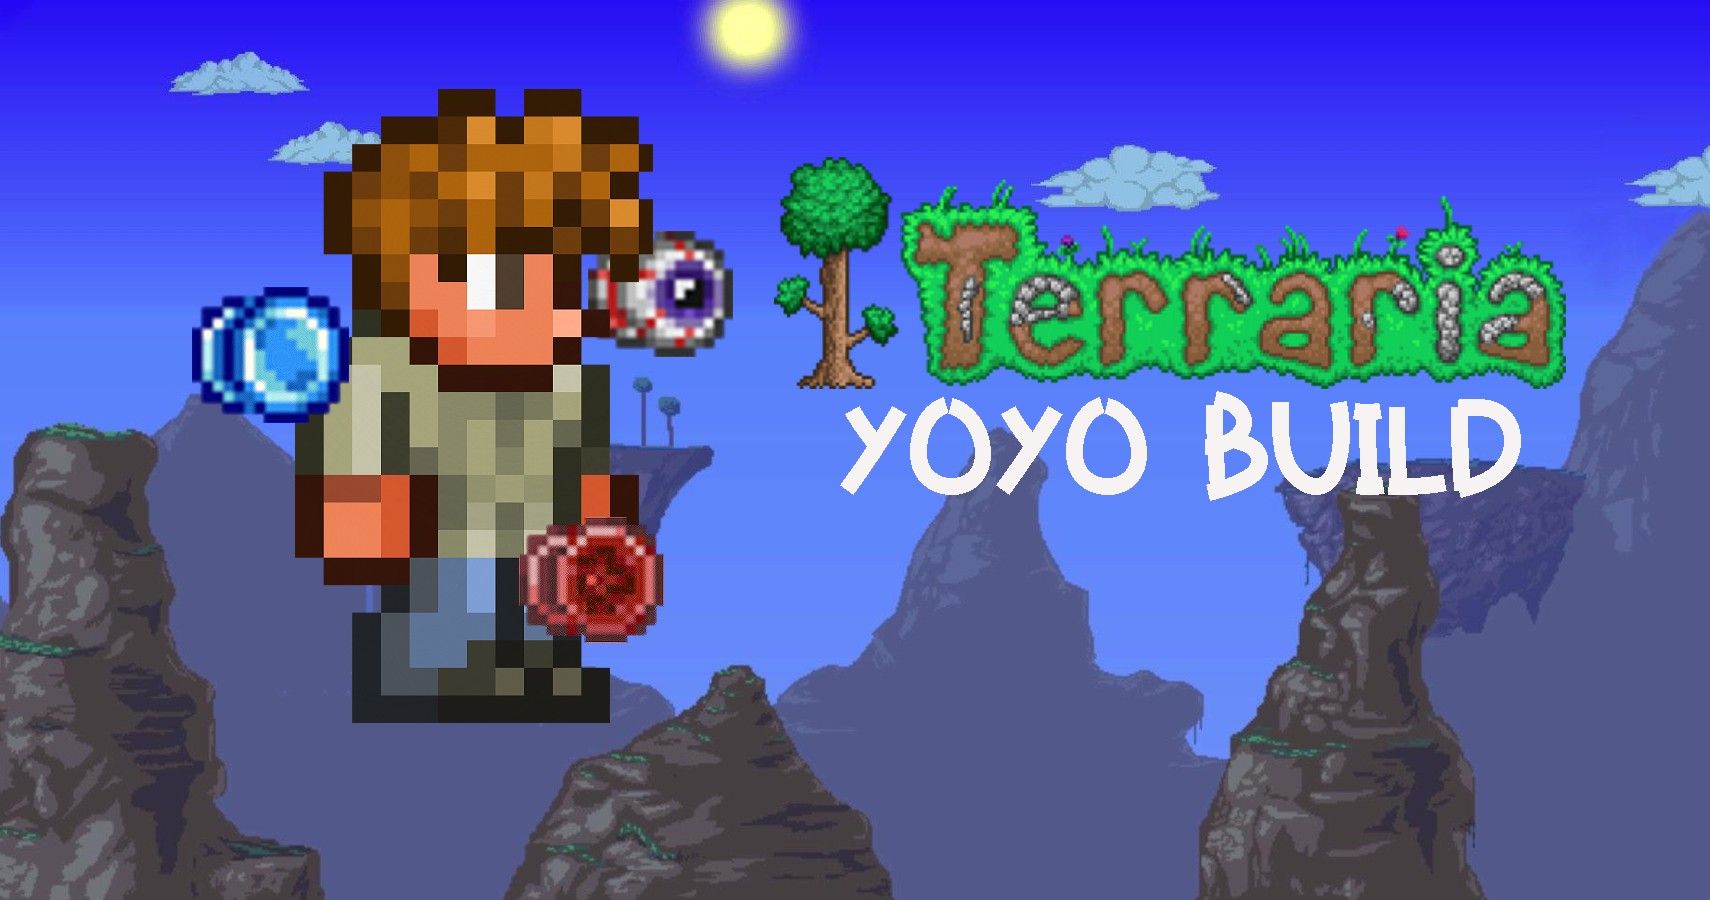 Terraria: Yoyo Build In Terraria